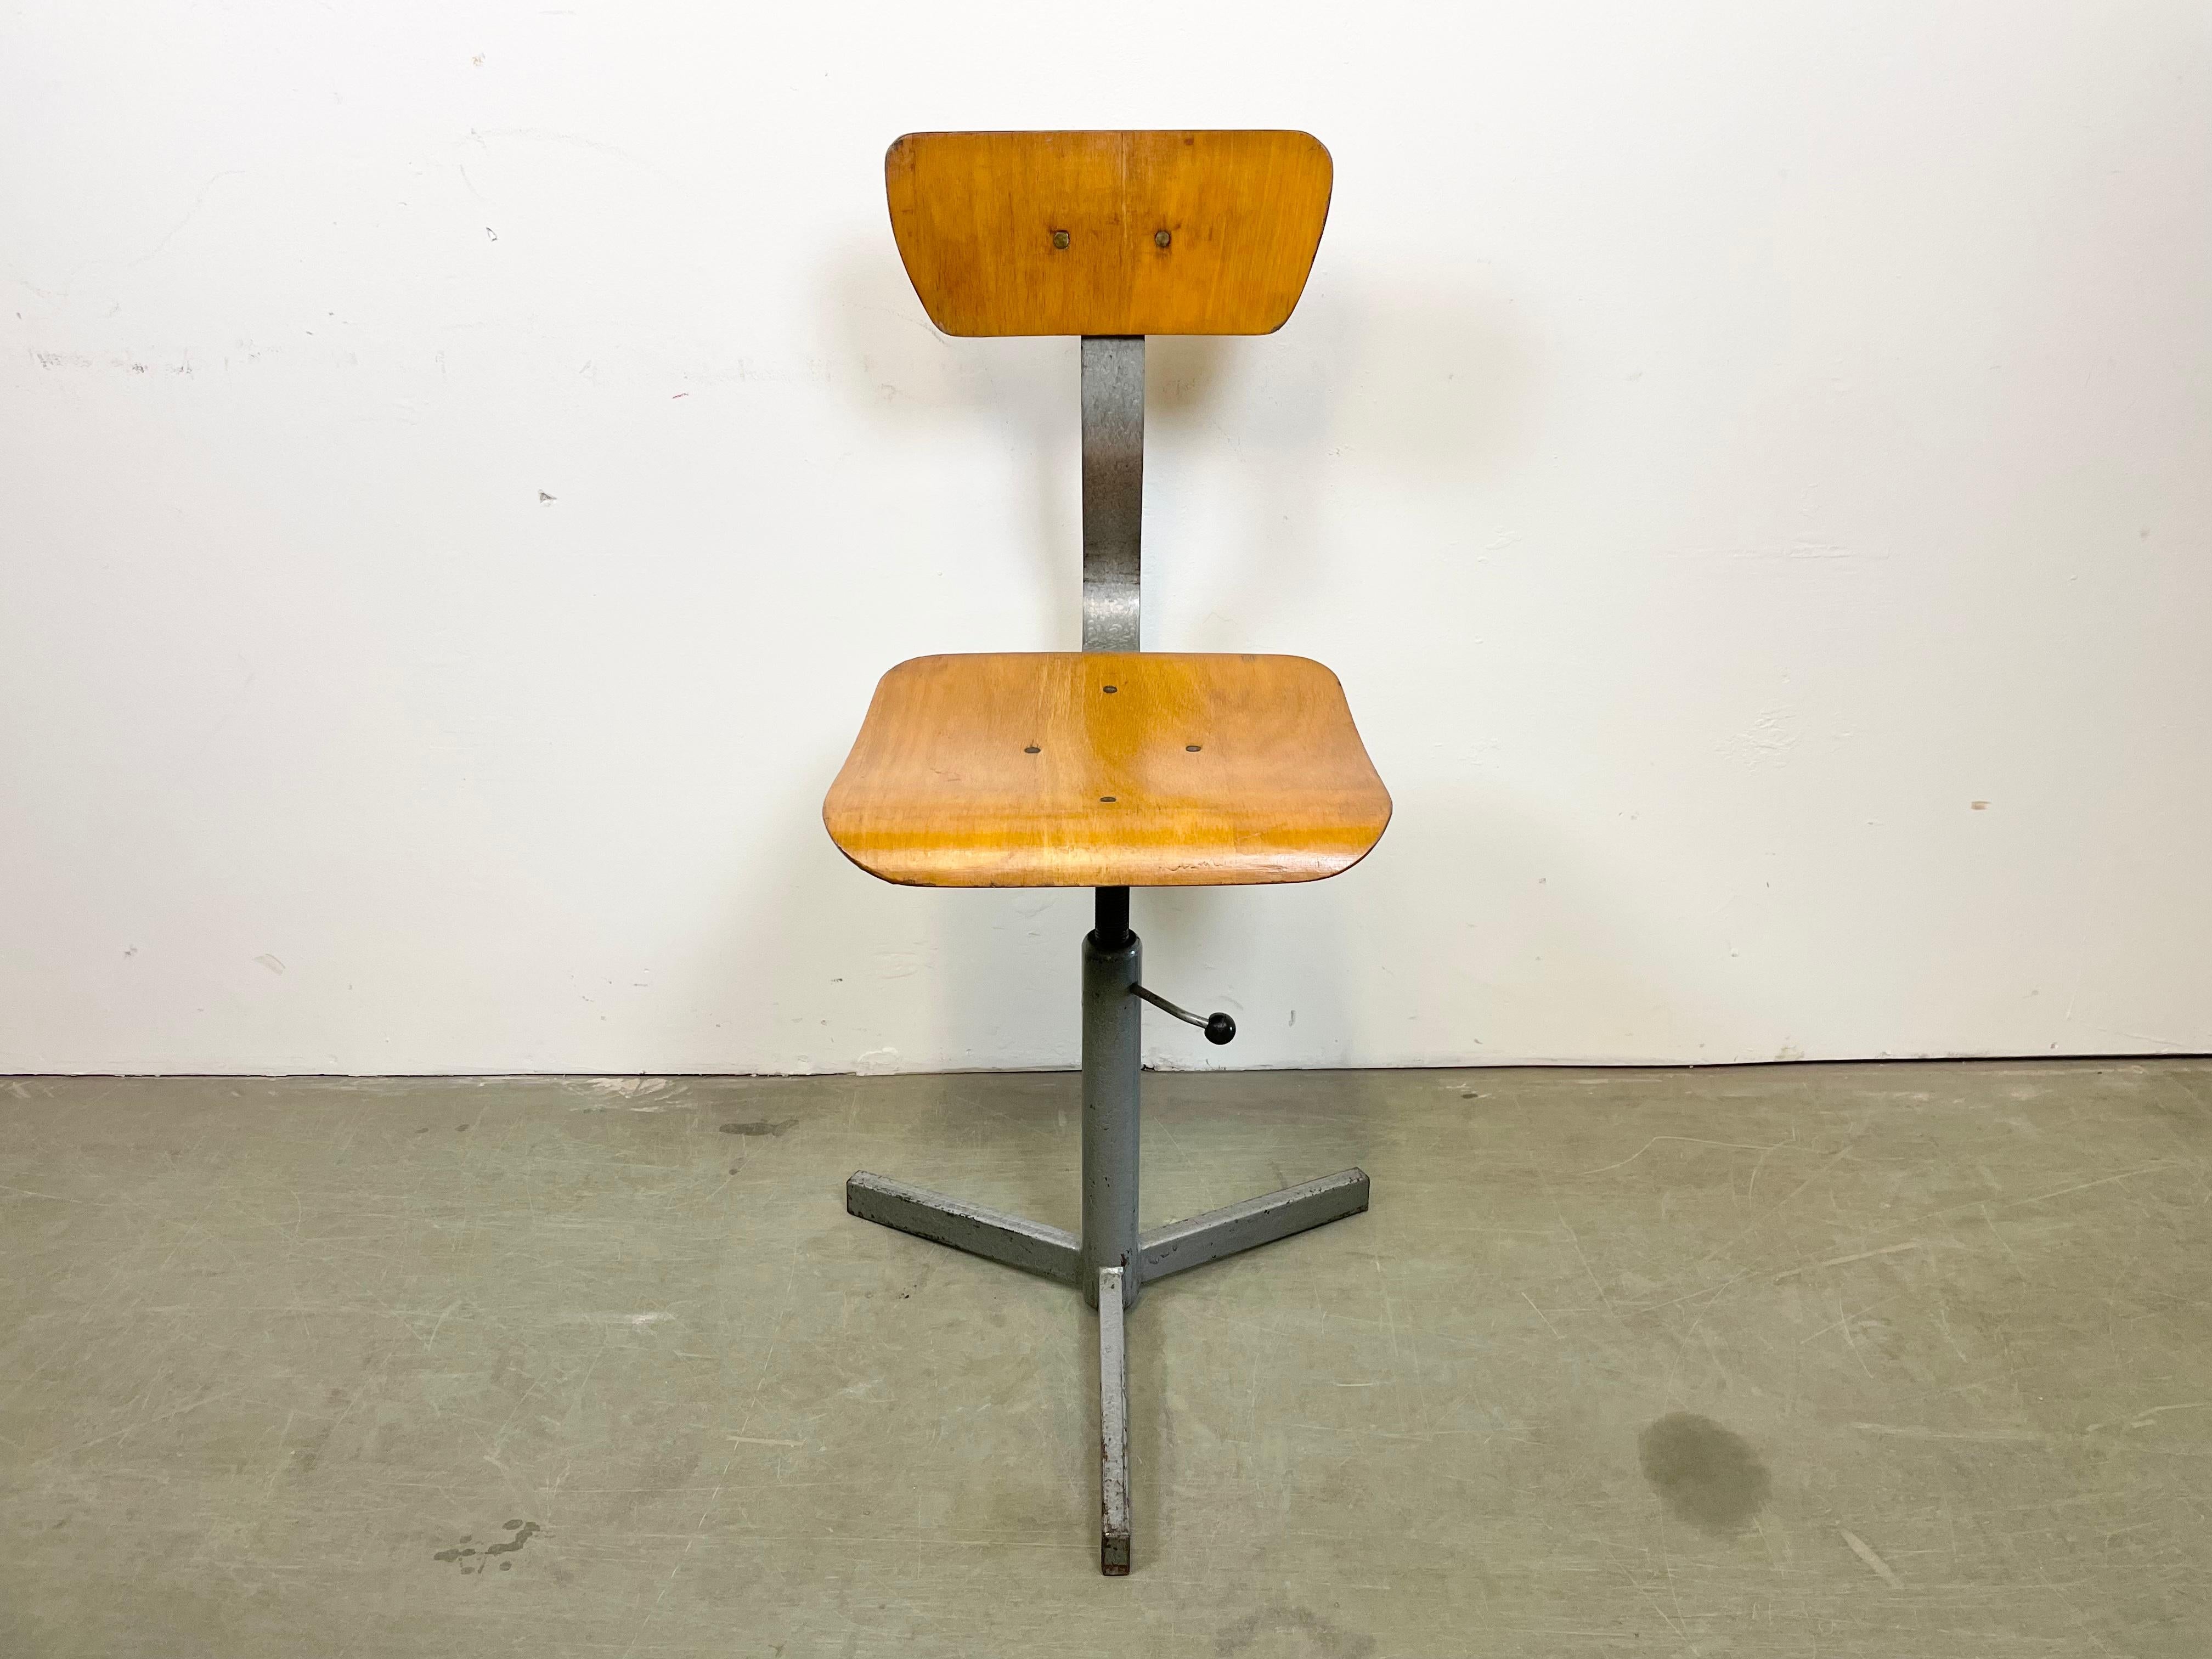 Höhenverstellbarer Industriedrehstuhl, hergestellt in der ehemaligen Tschechoslowakei in den 1960er Jahren. Die Konstruktion besteht aus grau lackiertem Eisen und hat eine Sitzfläche und Rückenlehne aus Sperrholz. Der Stuhl ist in sehr gutem